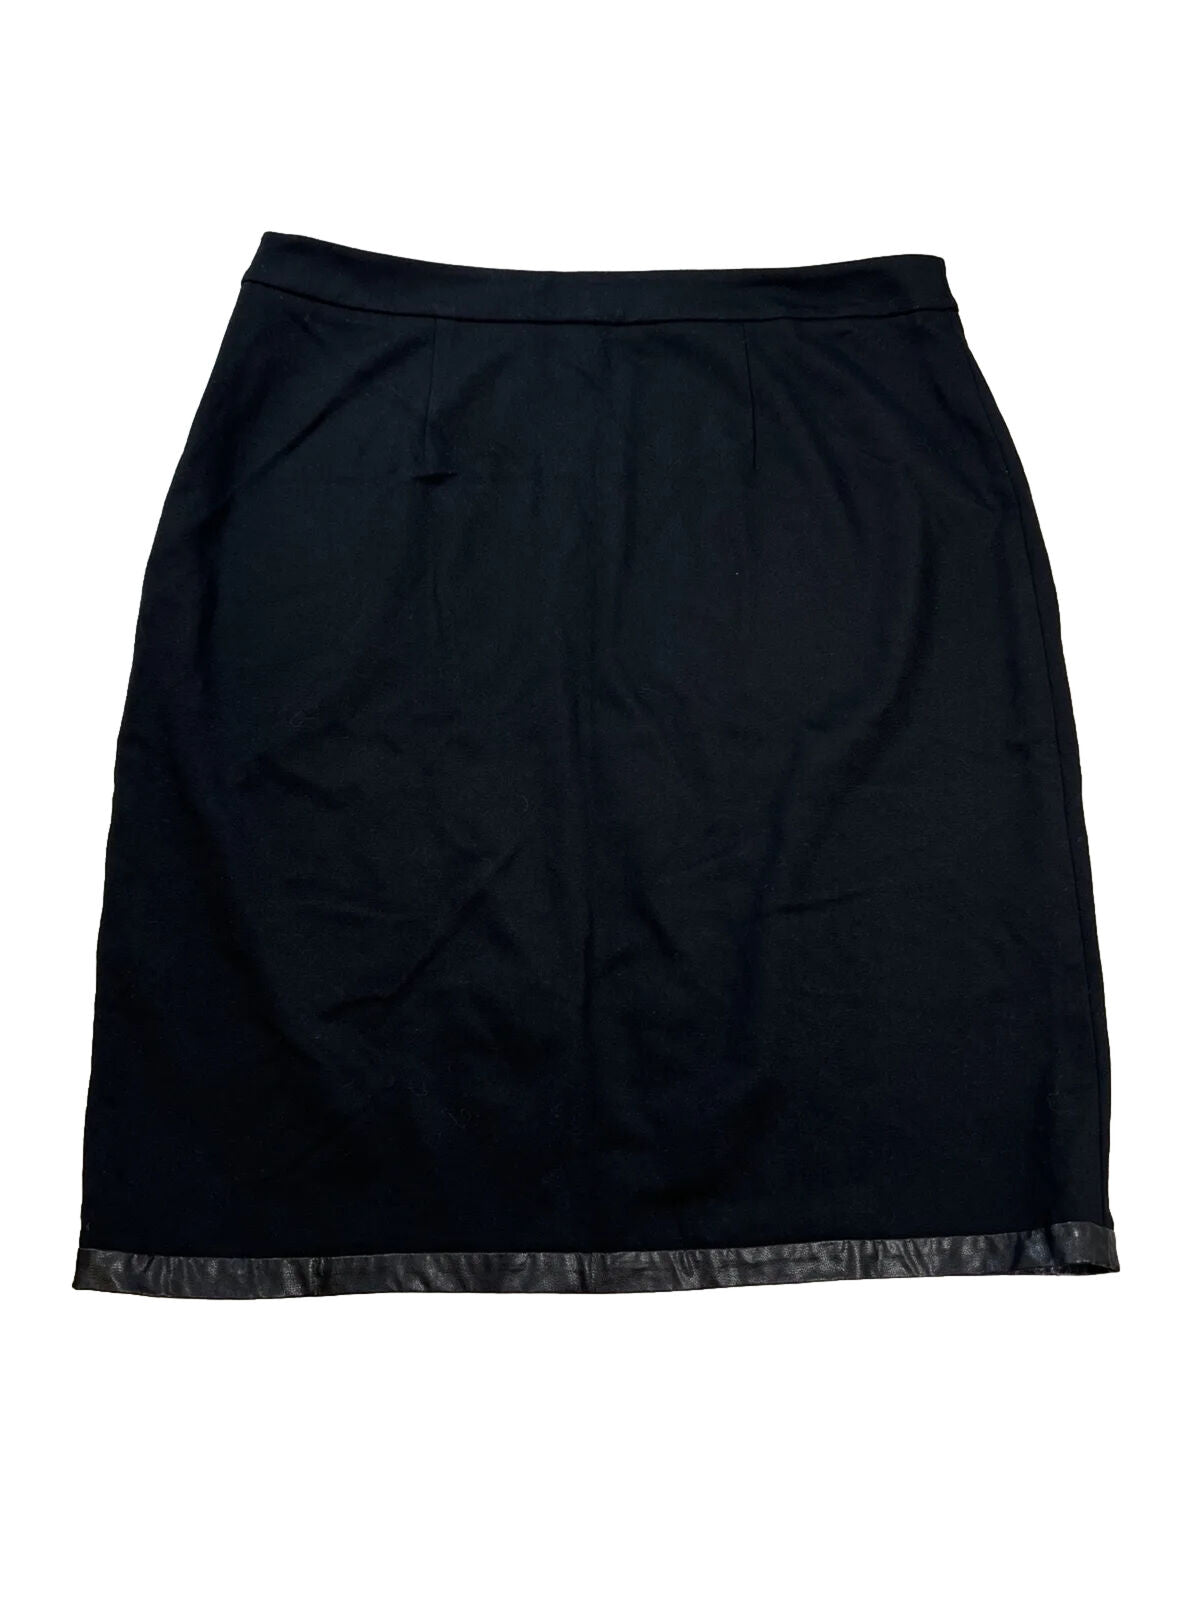 Chico's Women's Black Side Slit Knee Length Straight Skirt - 2/L